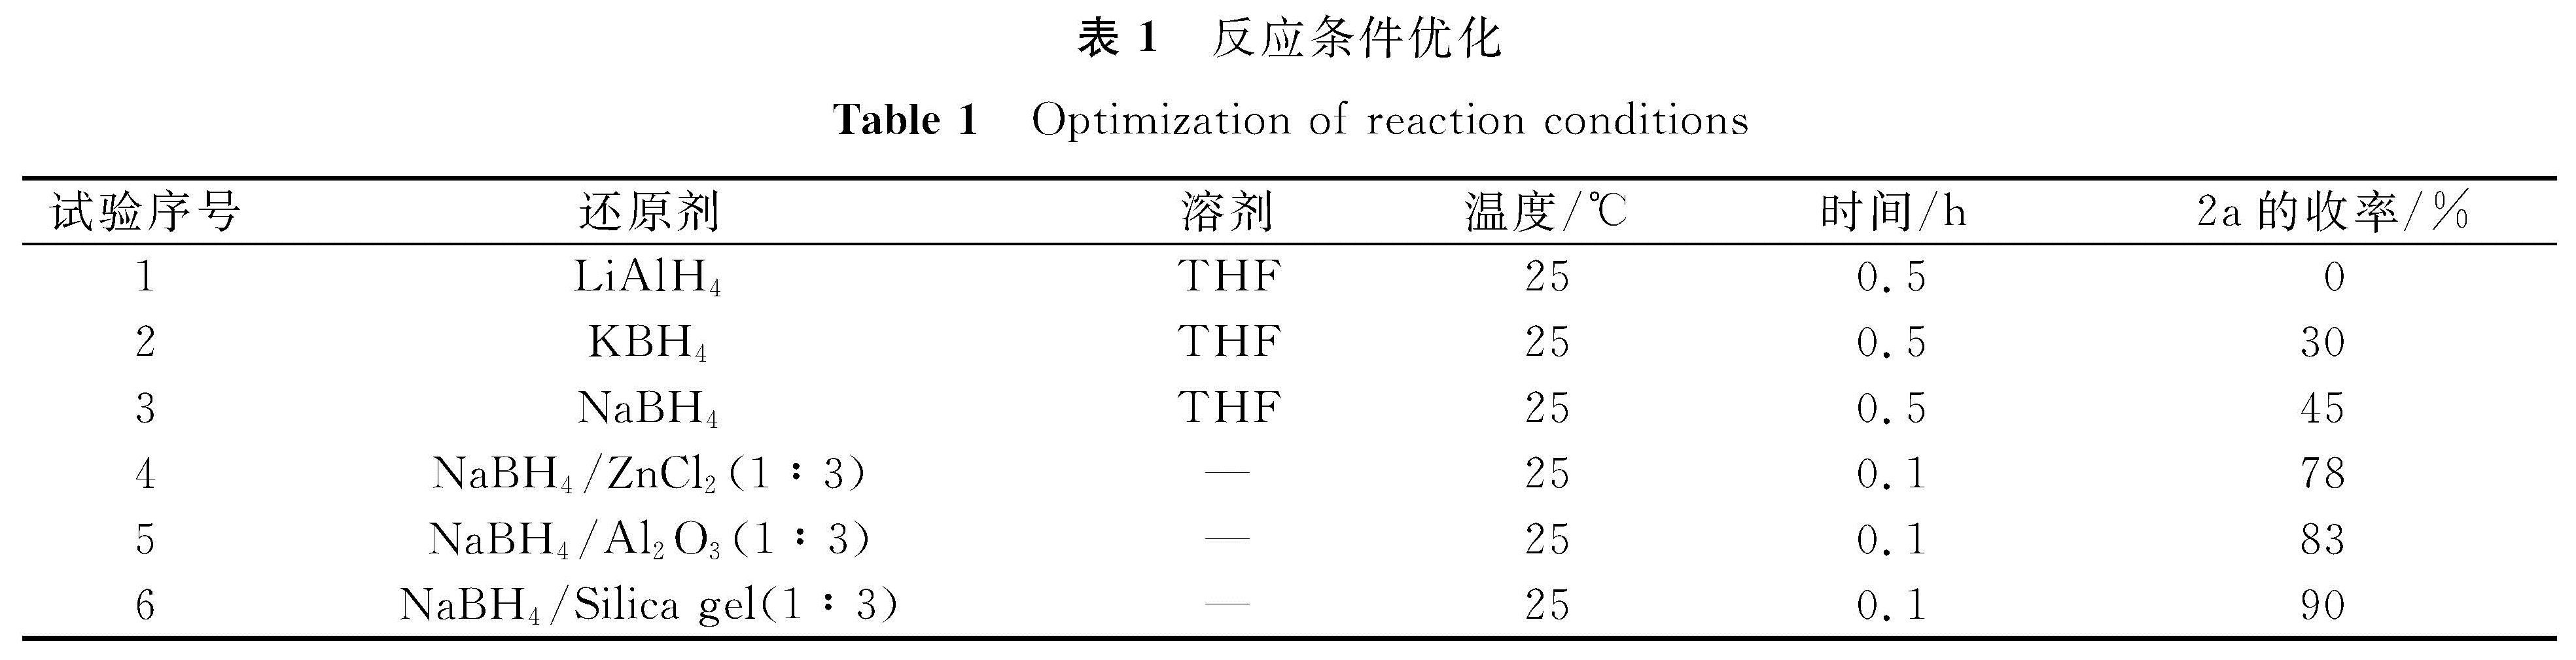 表1 反应条件优化<br/>Table 1 Optimization of reaction conditions